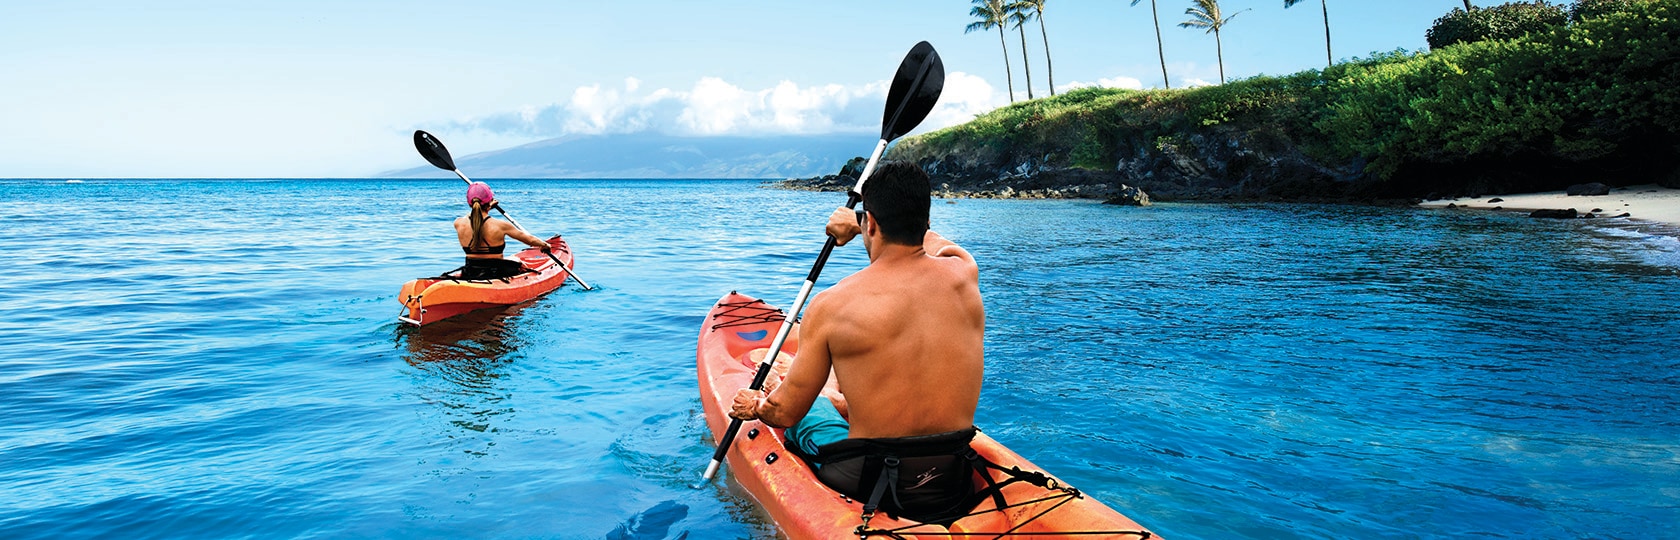 deux personnes faisant du kayak sur le littoral océanique avec des palmiers